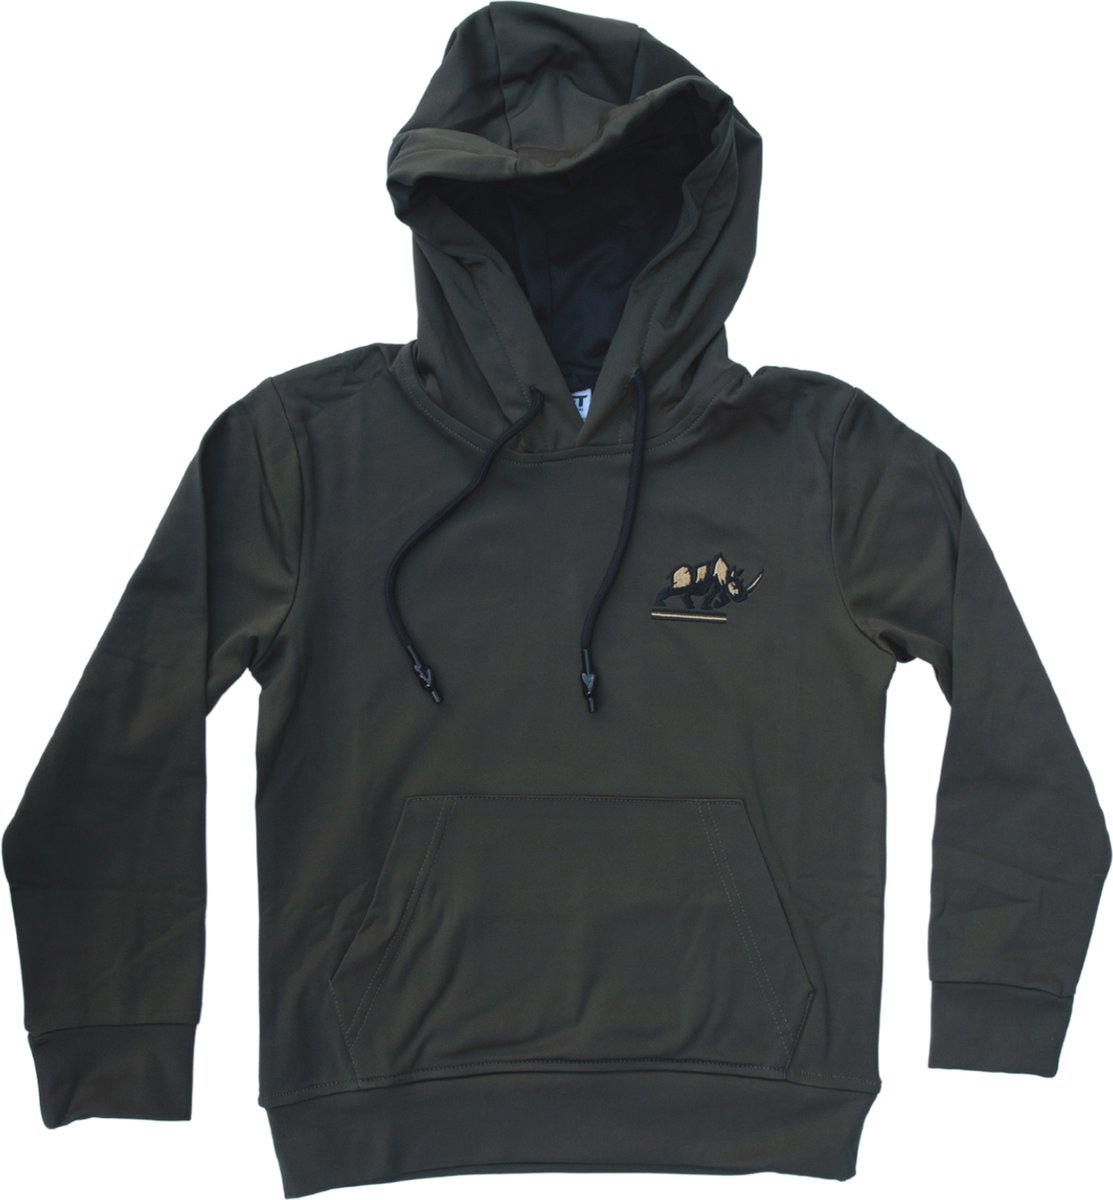 KAET - hoodie - unisex - Donkergroen - maat - S - outdoor - sportief - trui met capuchon - zacht gevoerd